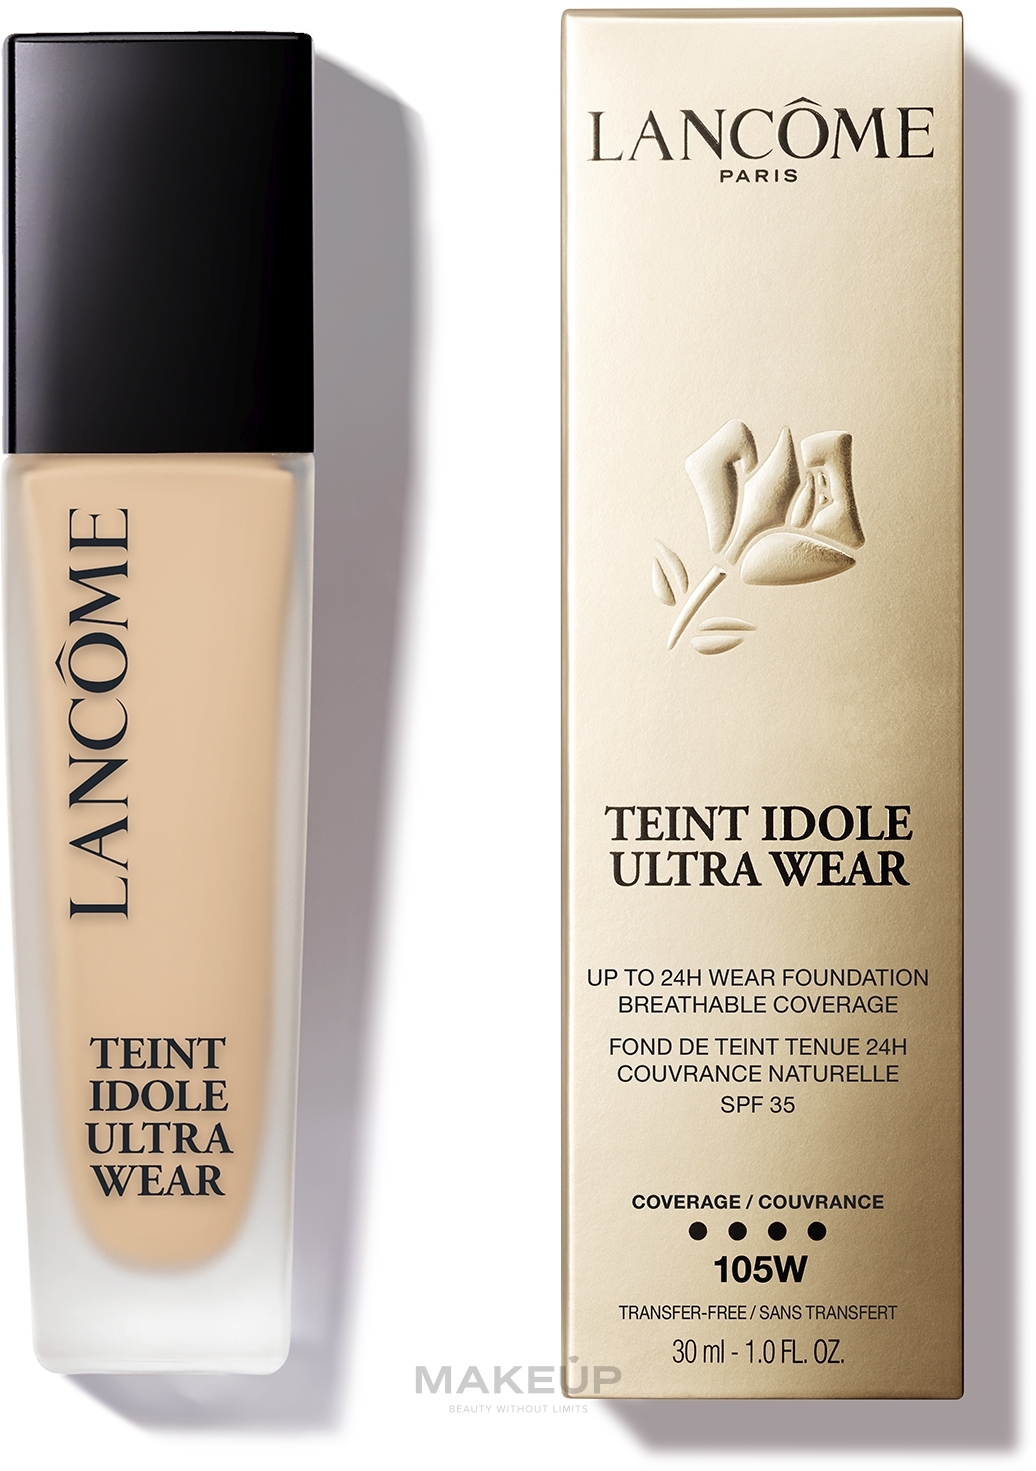 Lancome Teint Idole Ultra Wear 24h Longwear Foundation